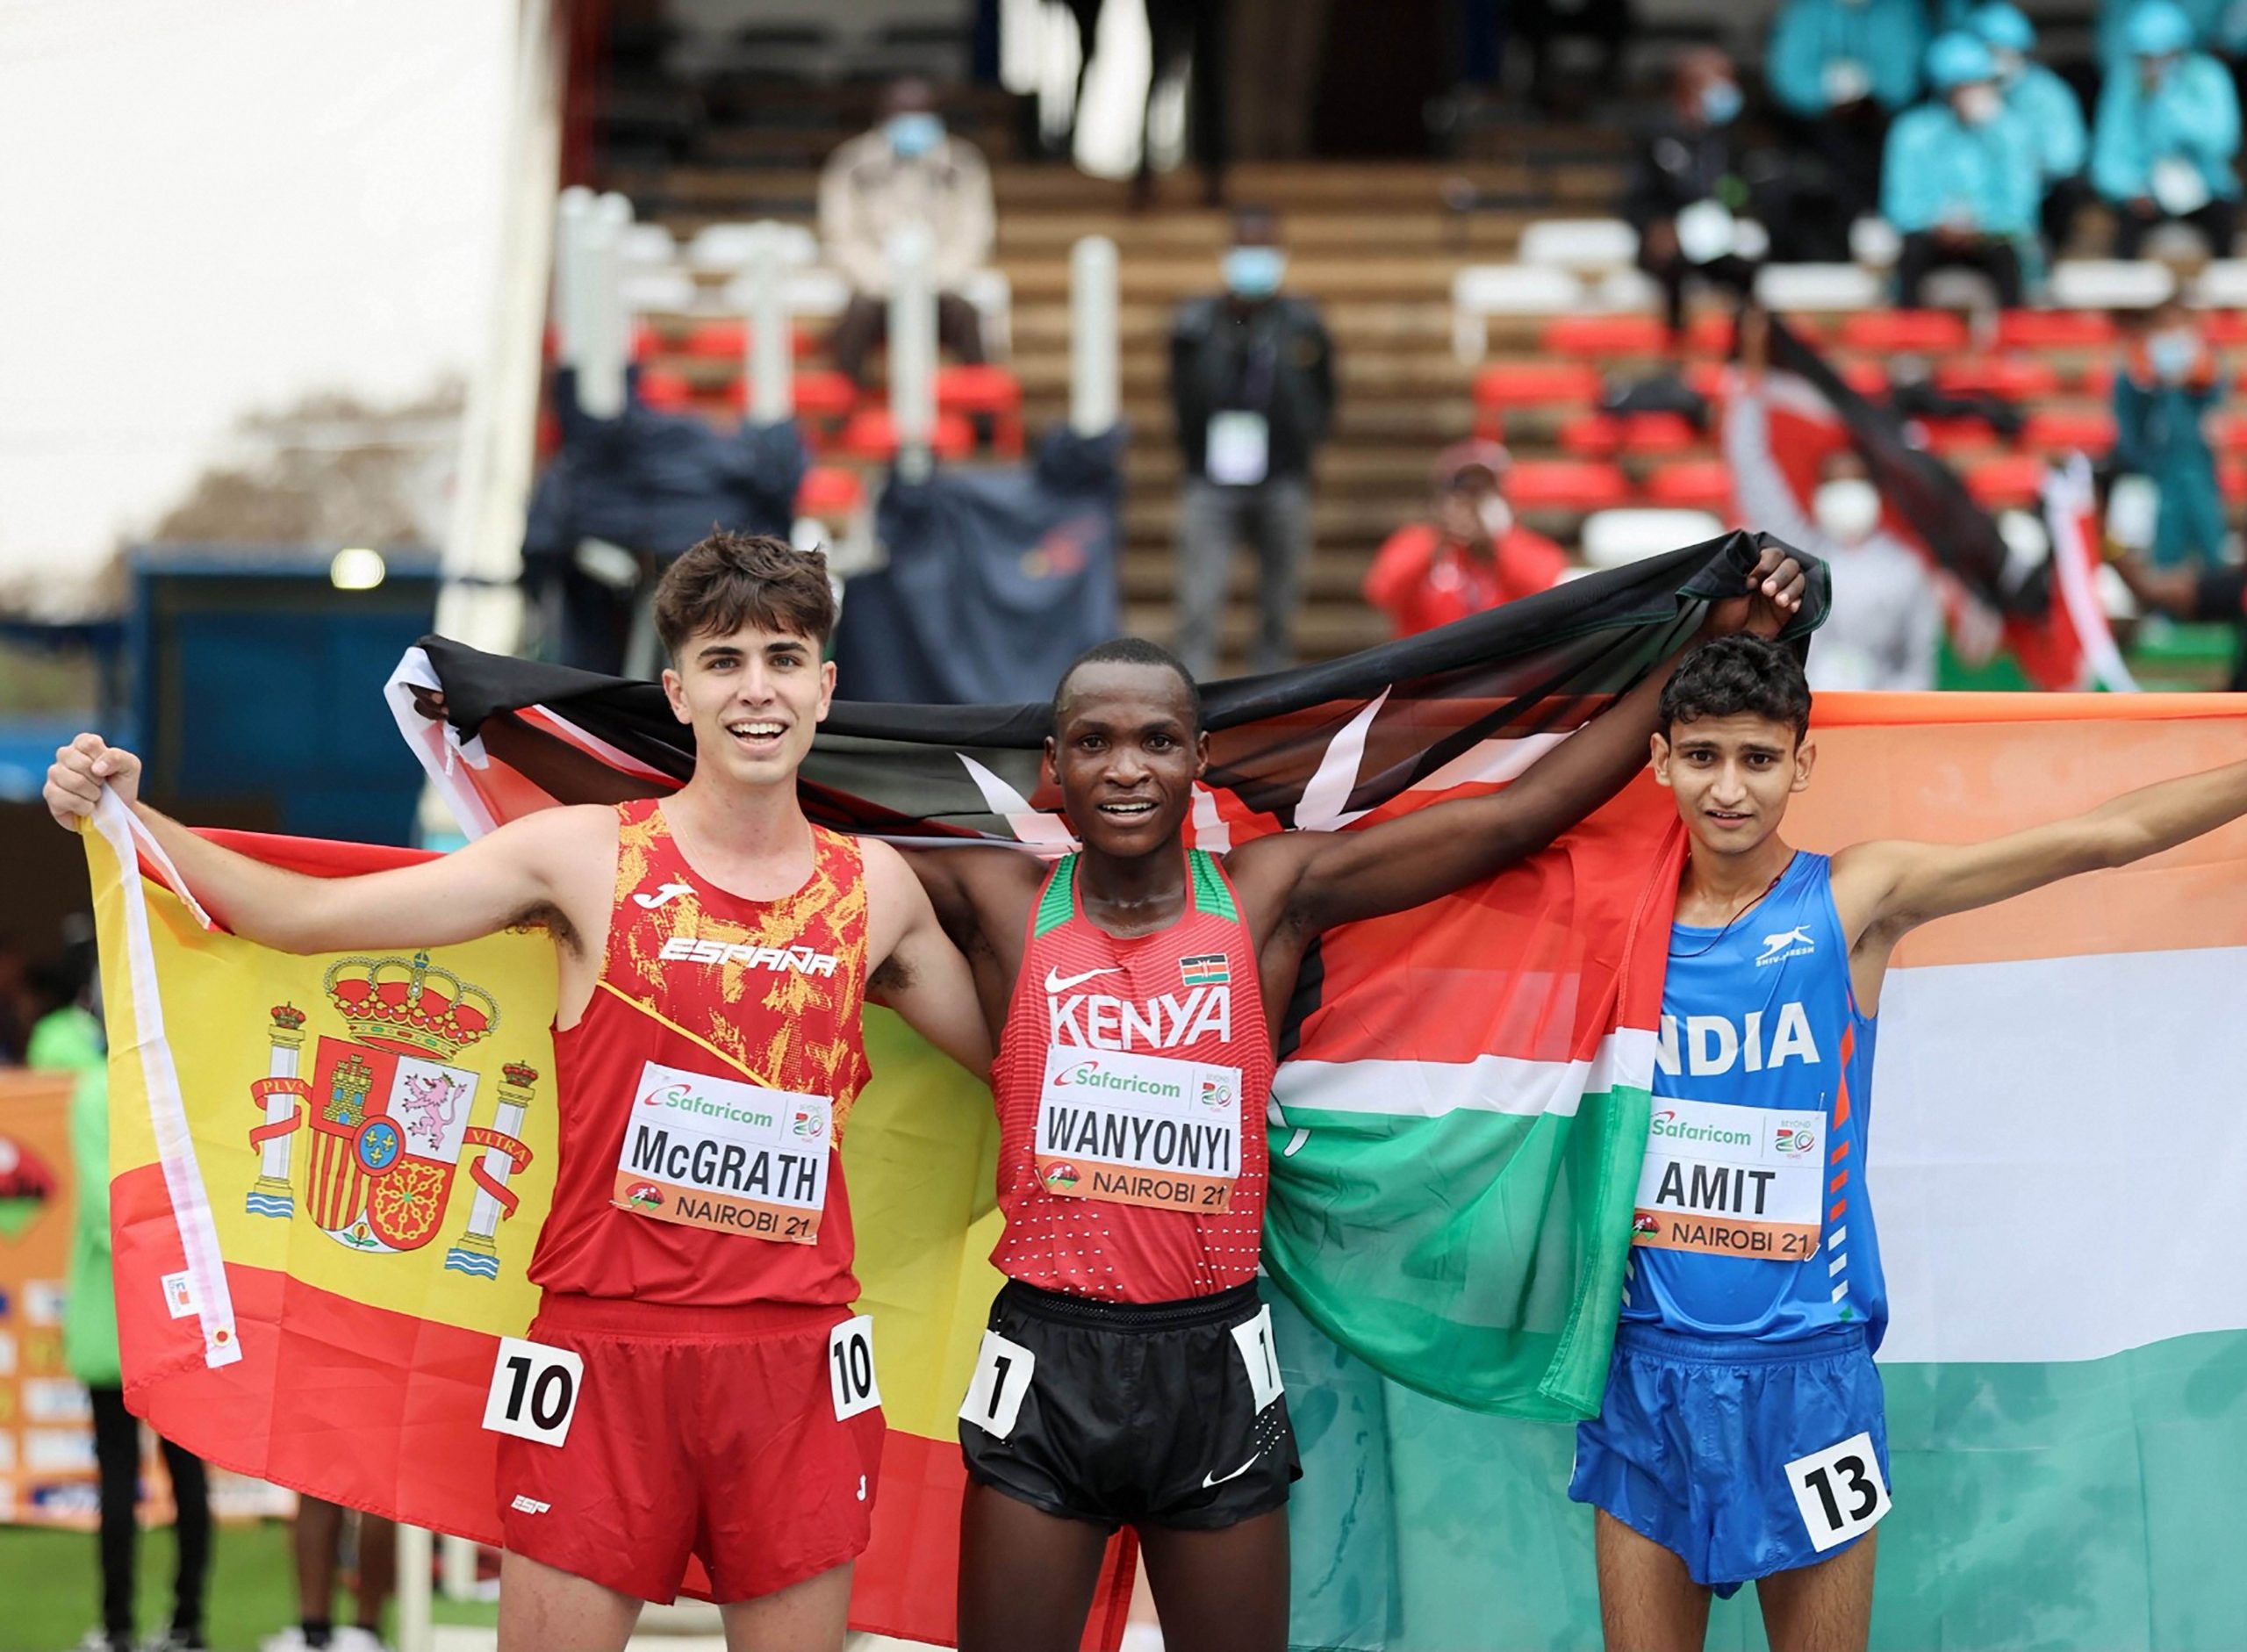 India’s Amit Khatri, 17, wins silver in 10km race walk at World U20 Athletics Meet